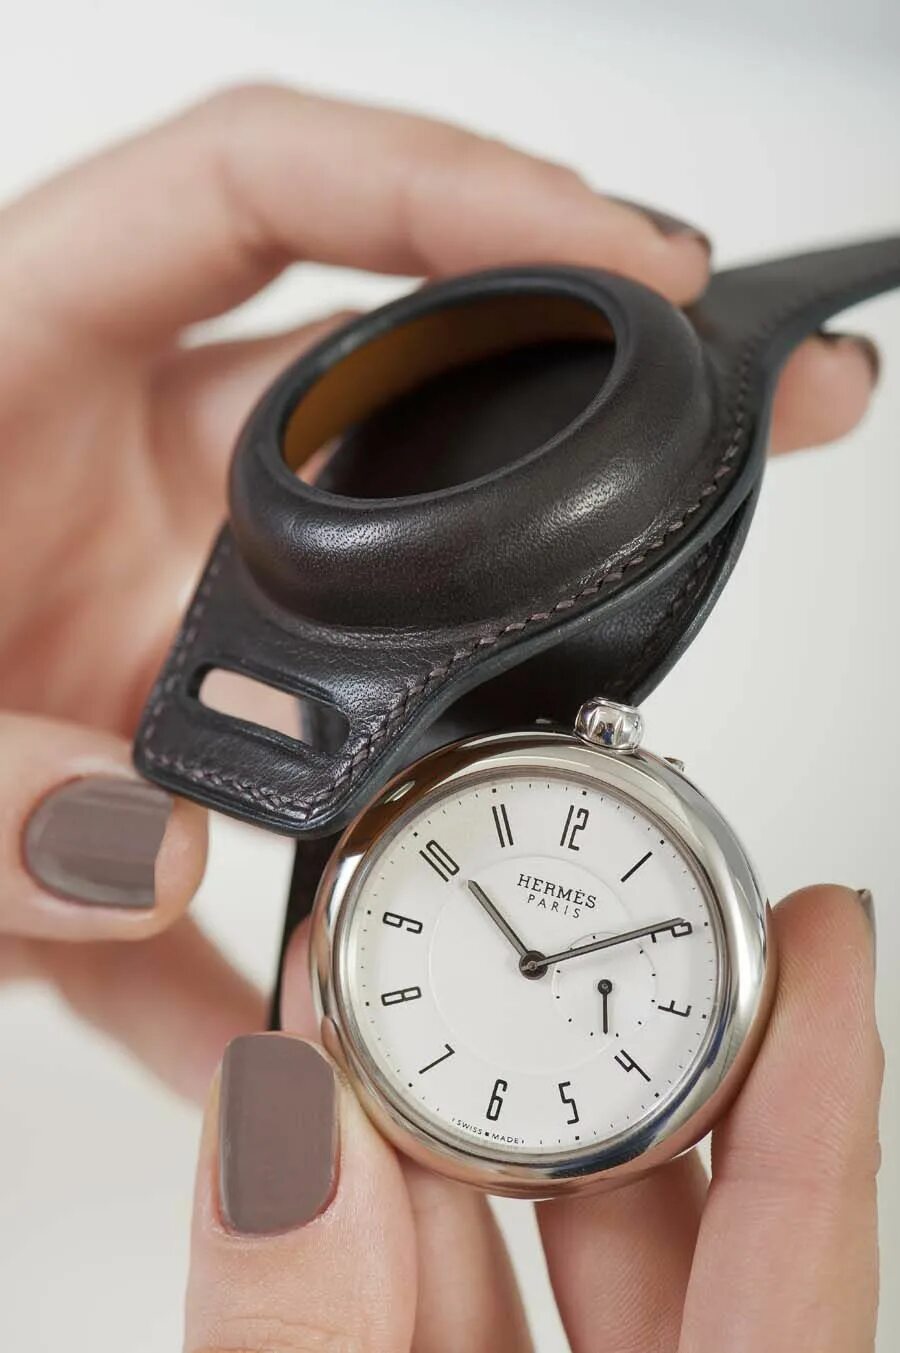 Карманно наручные часы. Наручный ремешок для карманных часов. Наручные часы из карманных. Чехол для карманных часов кожаный. Карманные часы на ремешке на руку.